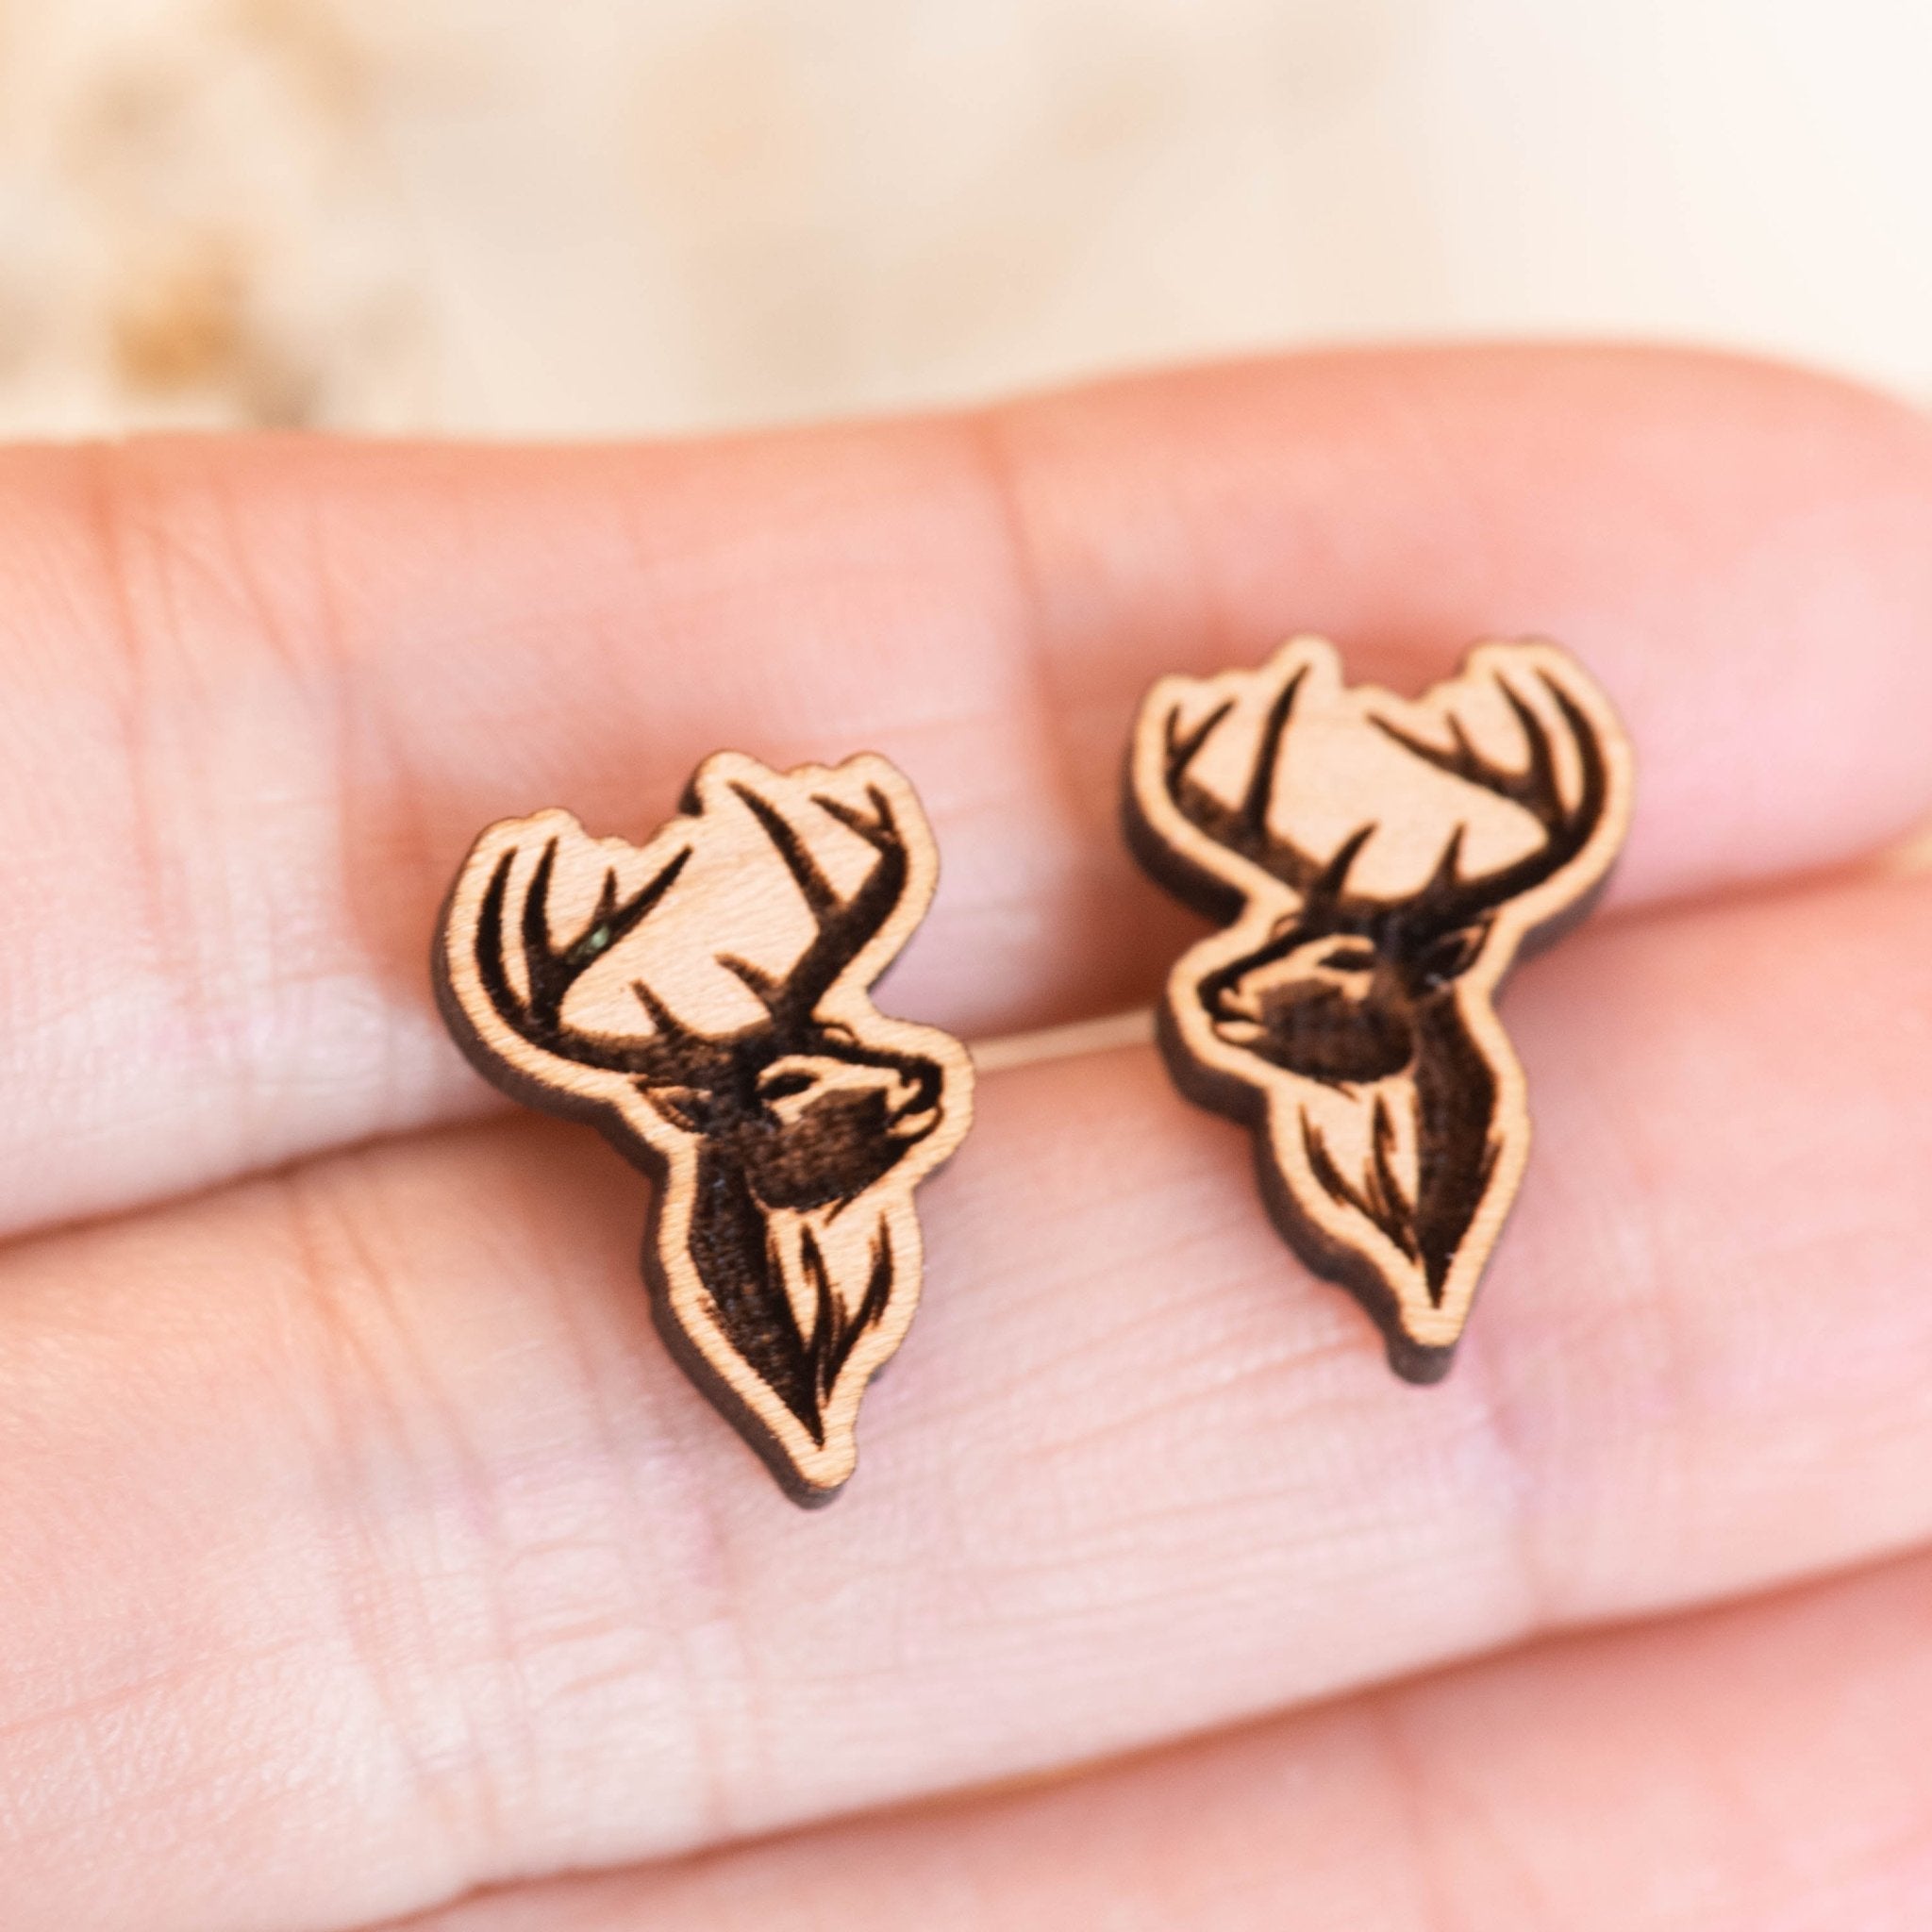 Deer Stag Silhouette Wood Earrings - EL10133 - Robin Valley Official Store